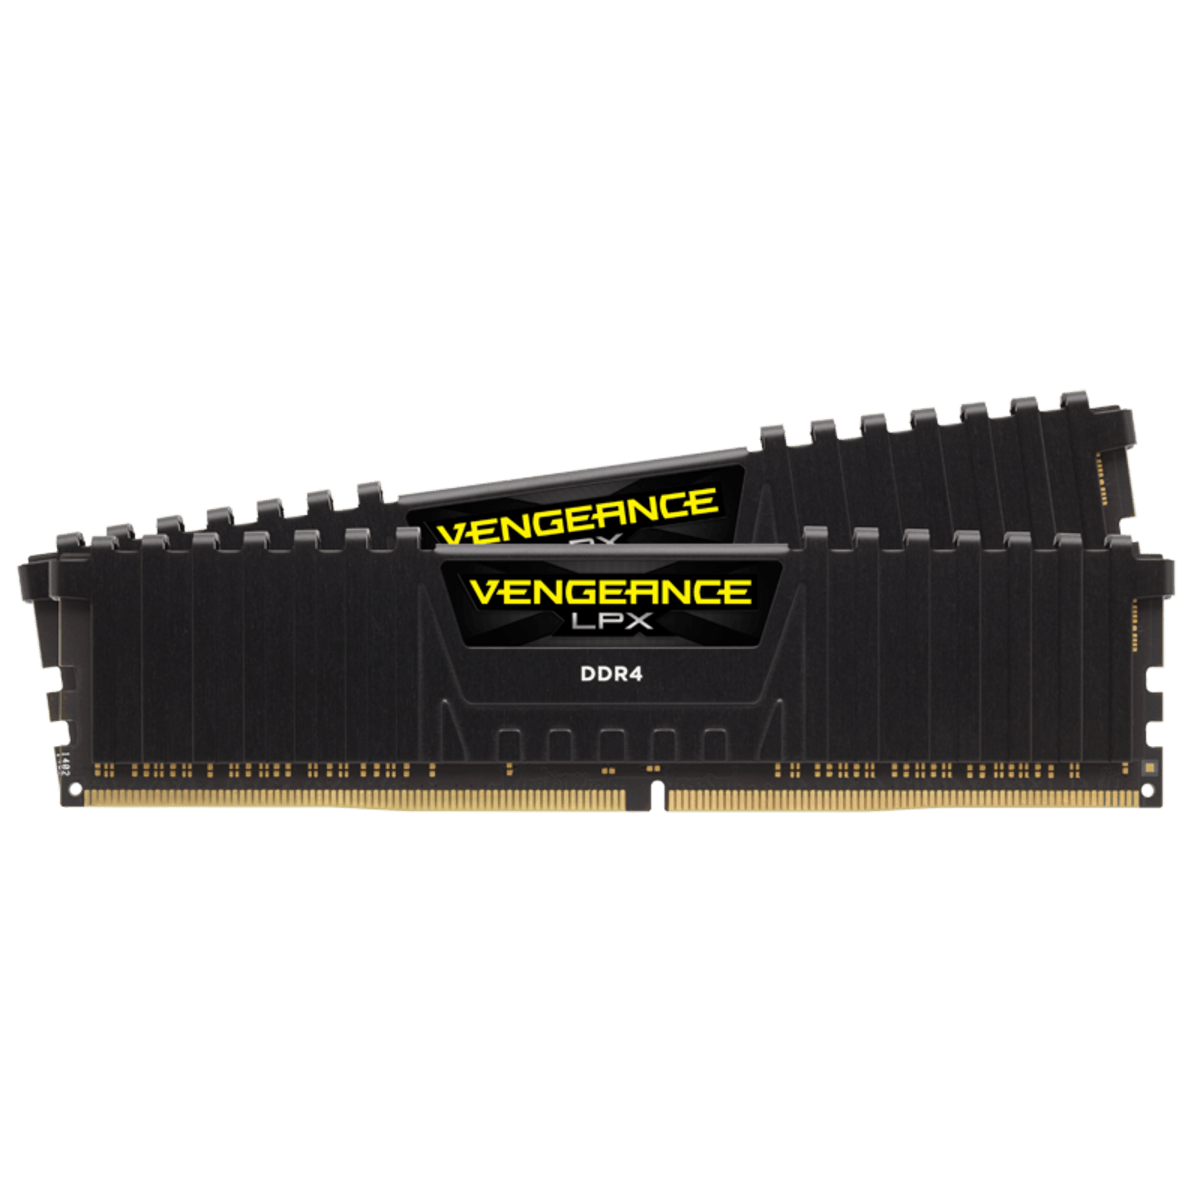 Corsair VENGEANCE LPX 16GB (2x8GB) DDR4 3600MHz C18 RAM - computer parts -  by owner - electronics sale - craigslist